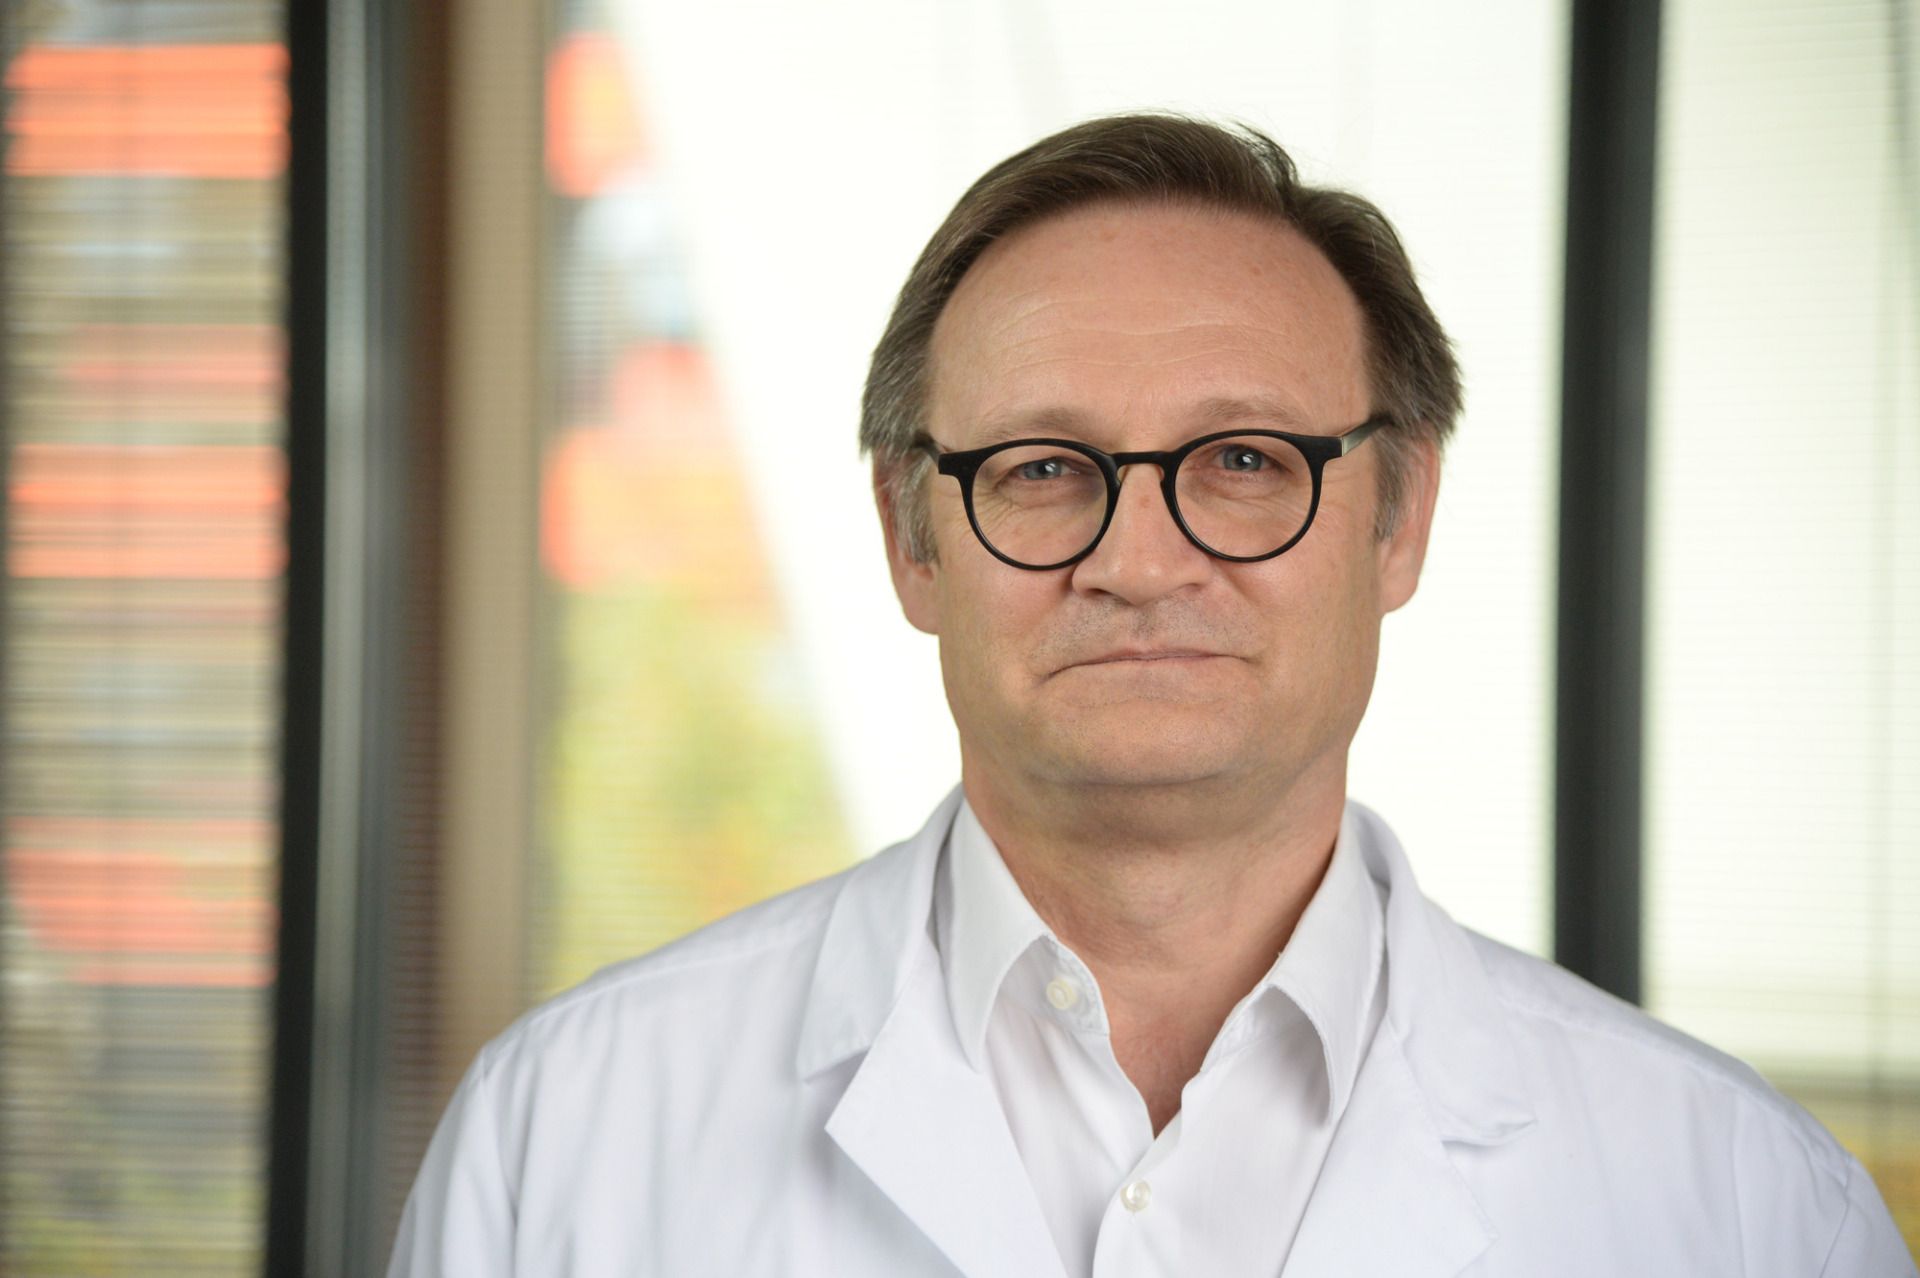 Prof. Dr. med. Urs Frey, ärztlicher Direktor UKBB, Mitglied der Geschäftsleitung UKBB und Ordinarius für Pädiatrie an der Universität Basel